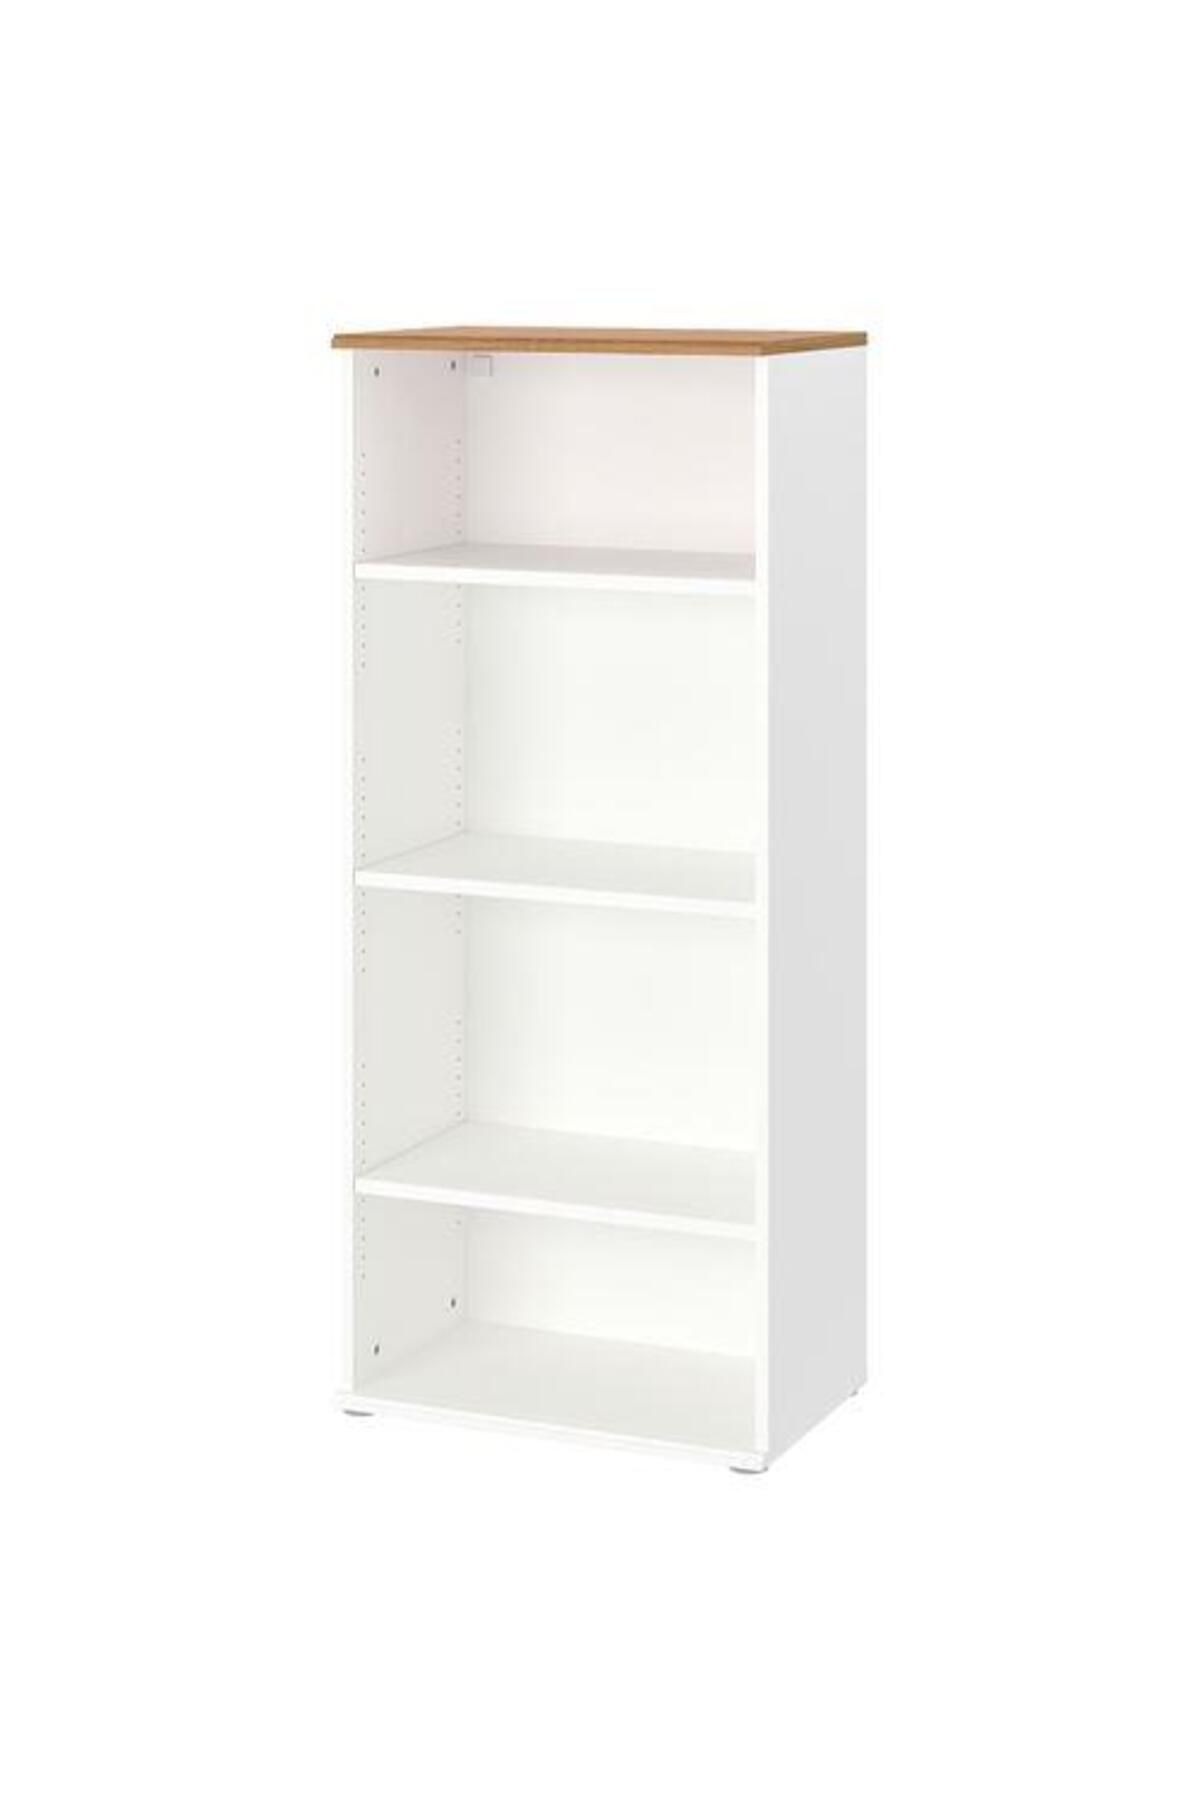 IKEA Açık Kitaplık Raf Ünitesi Beyaz Renk Meridyendukkan 60x140 Cm Ev Dekorasyonu